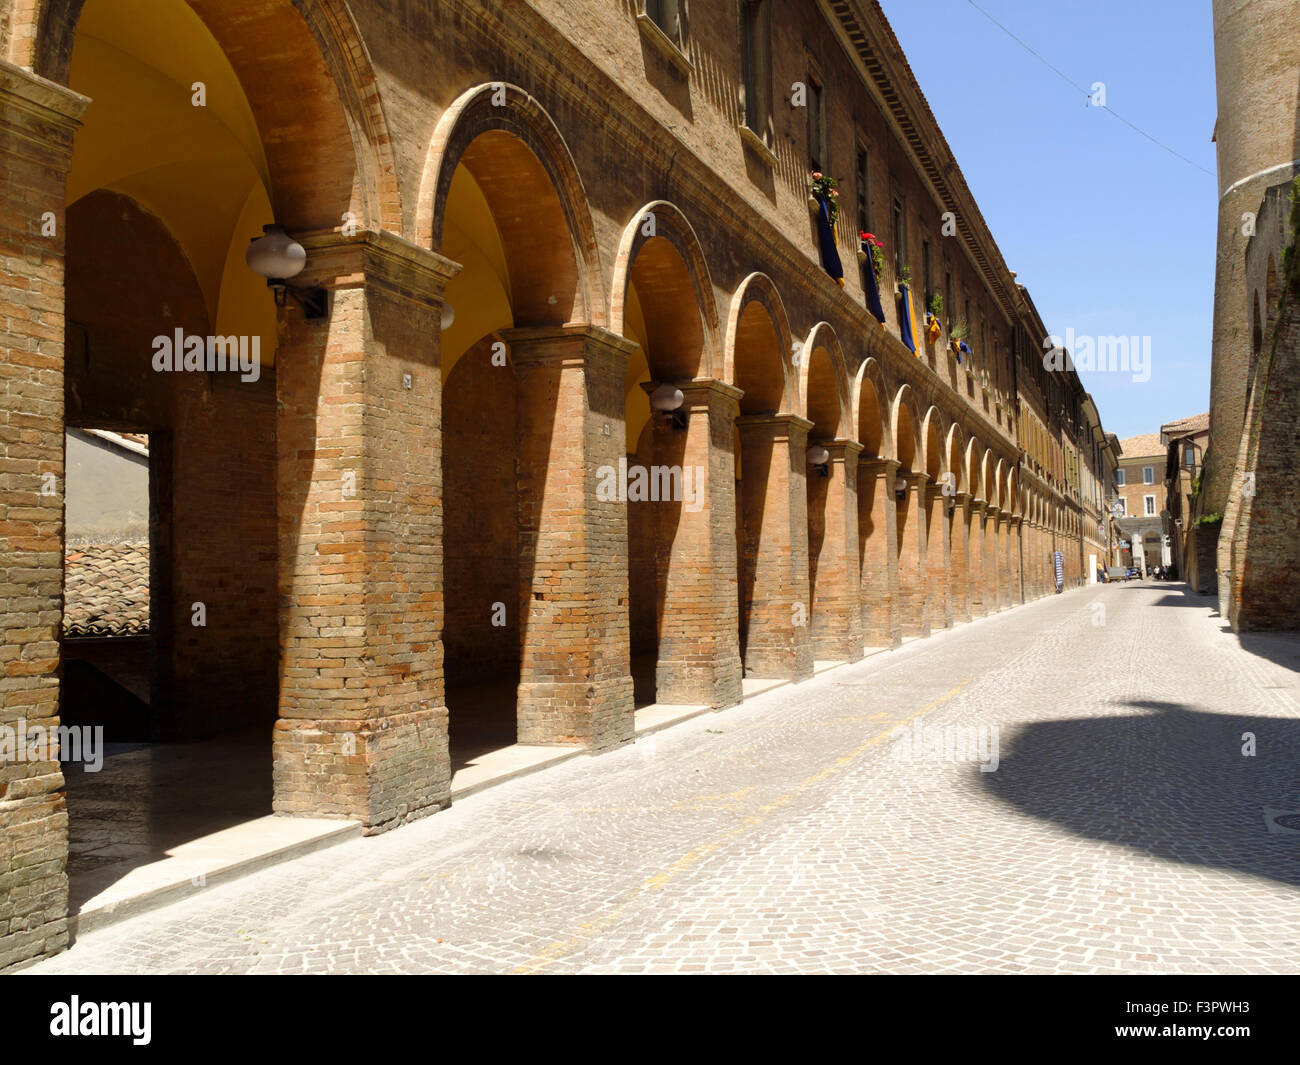 Italy, Emilia-Romagna, Urbino - the historic red brick architecture. Stock Photo